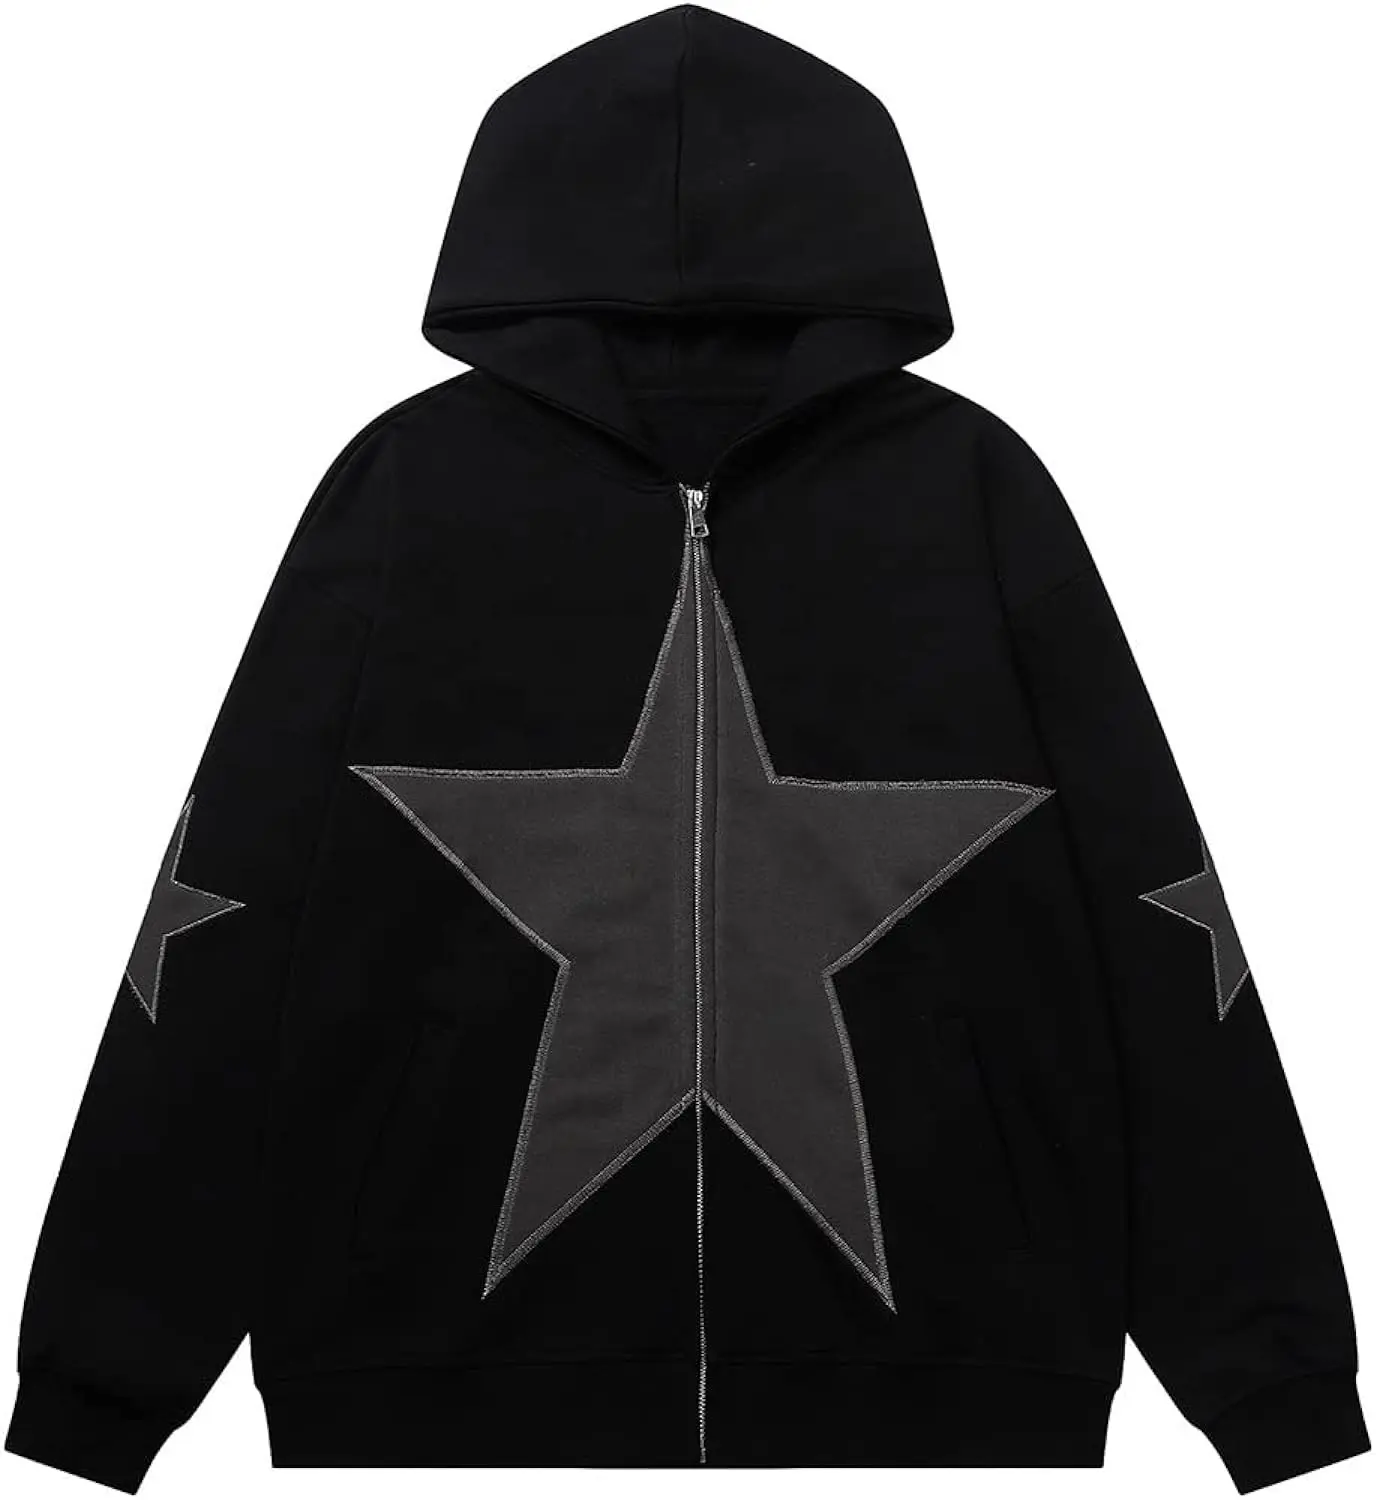 Sudadera con capucha negra con una estrella en la parte delantera, nuevo diseño, Sudadera con capucha de estrella a la moda, sudaderas con capucha bordadas, sudadera con parche de estrella